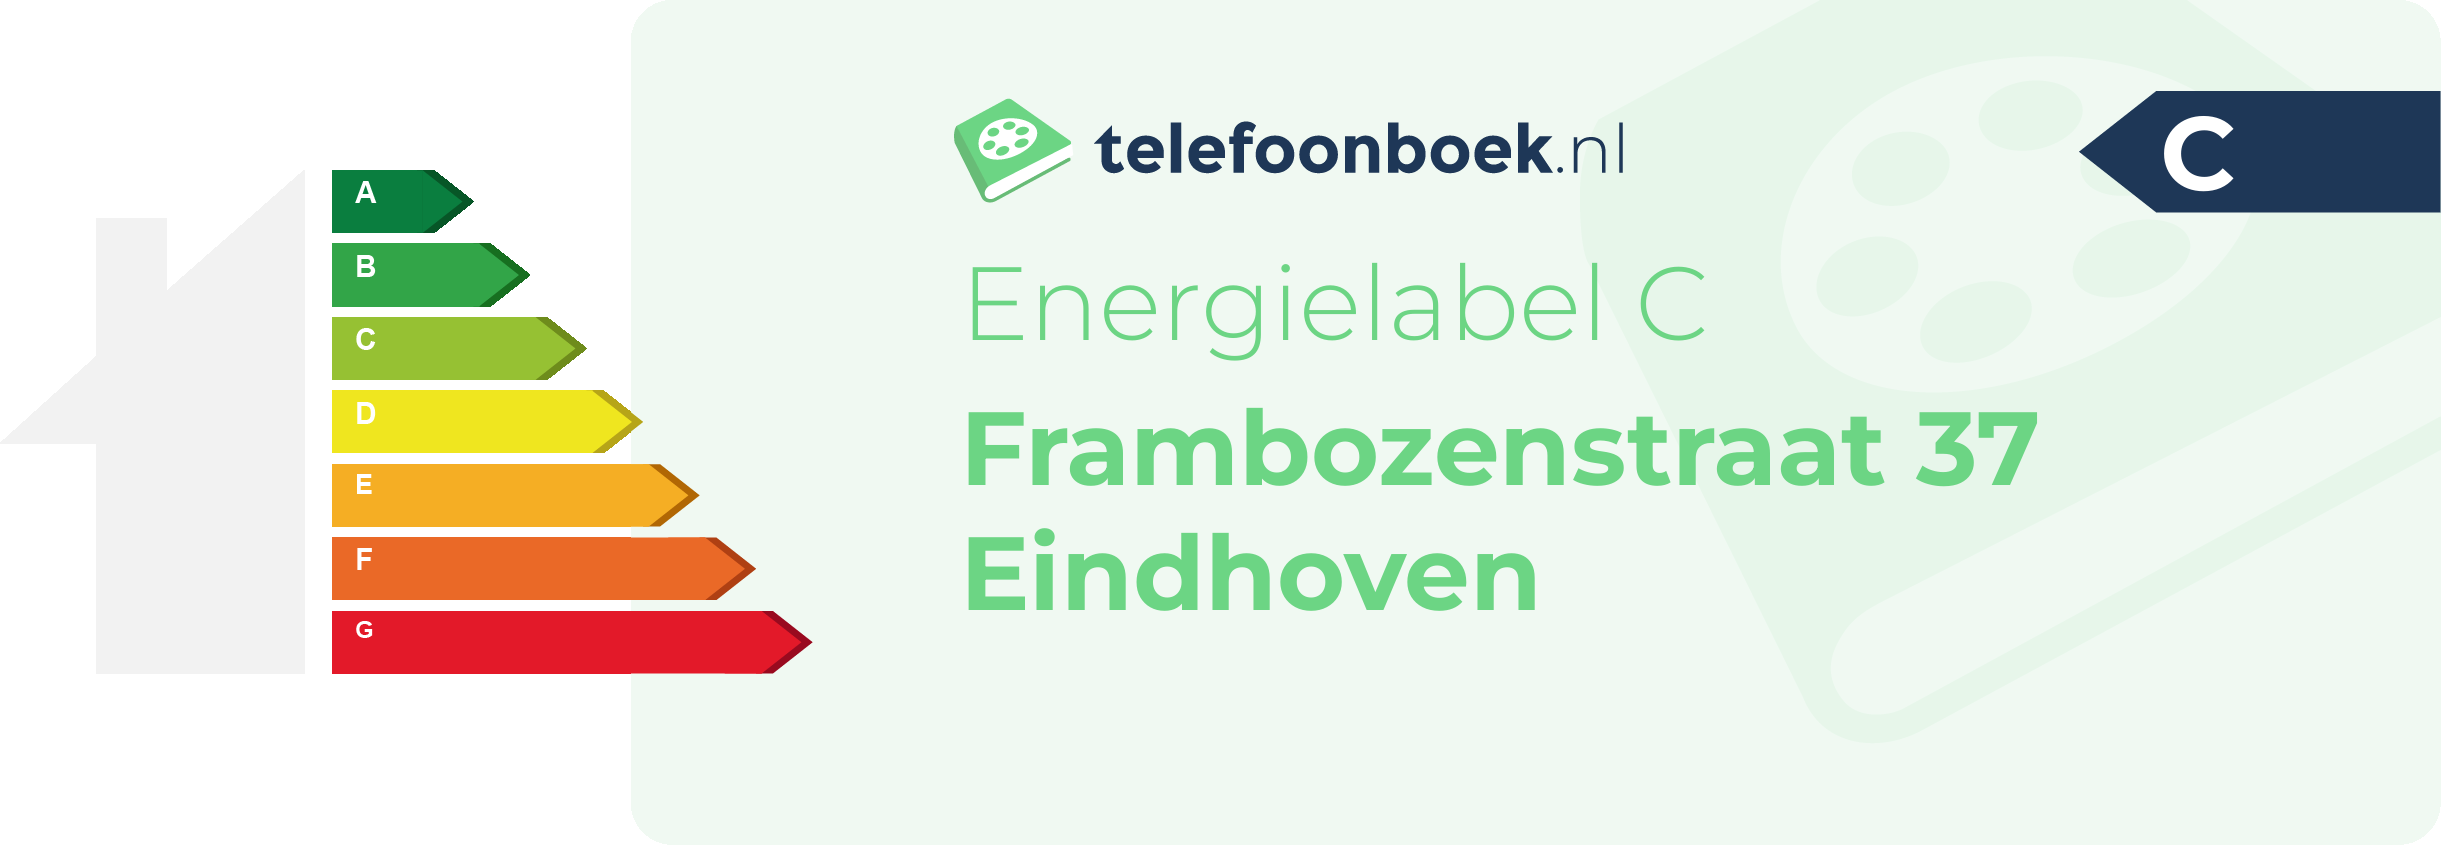 Energielabel Frambozenstraat 37 Eindhoven